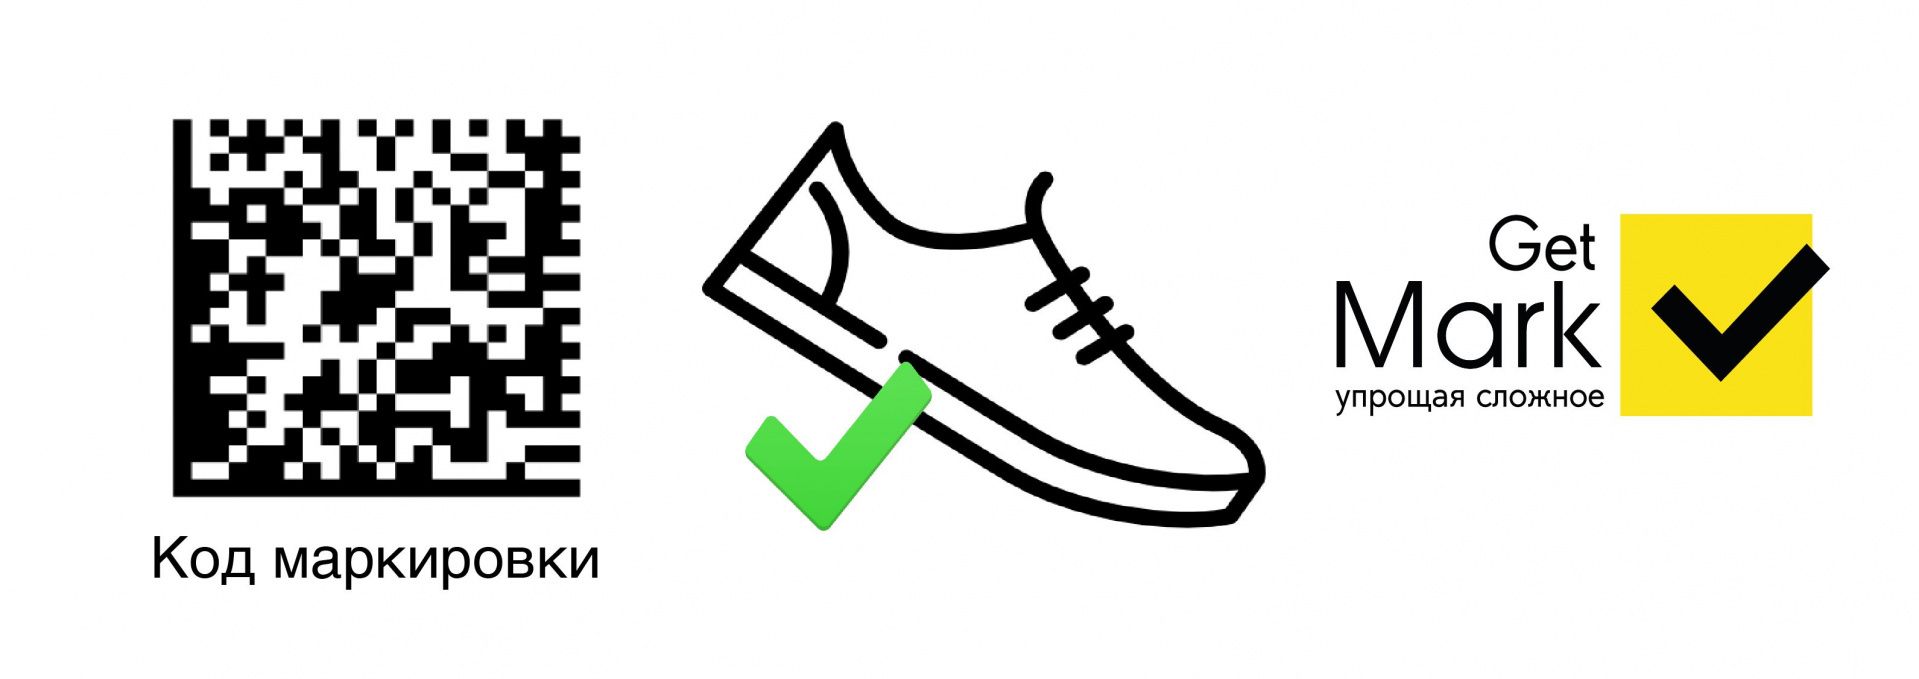 Как правильно маркировать обувь